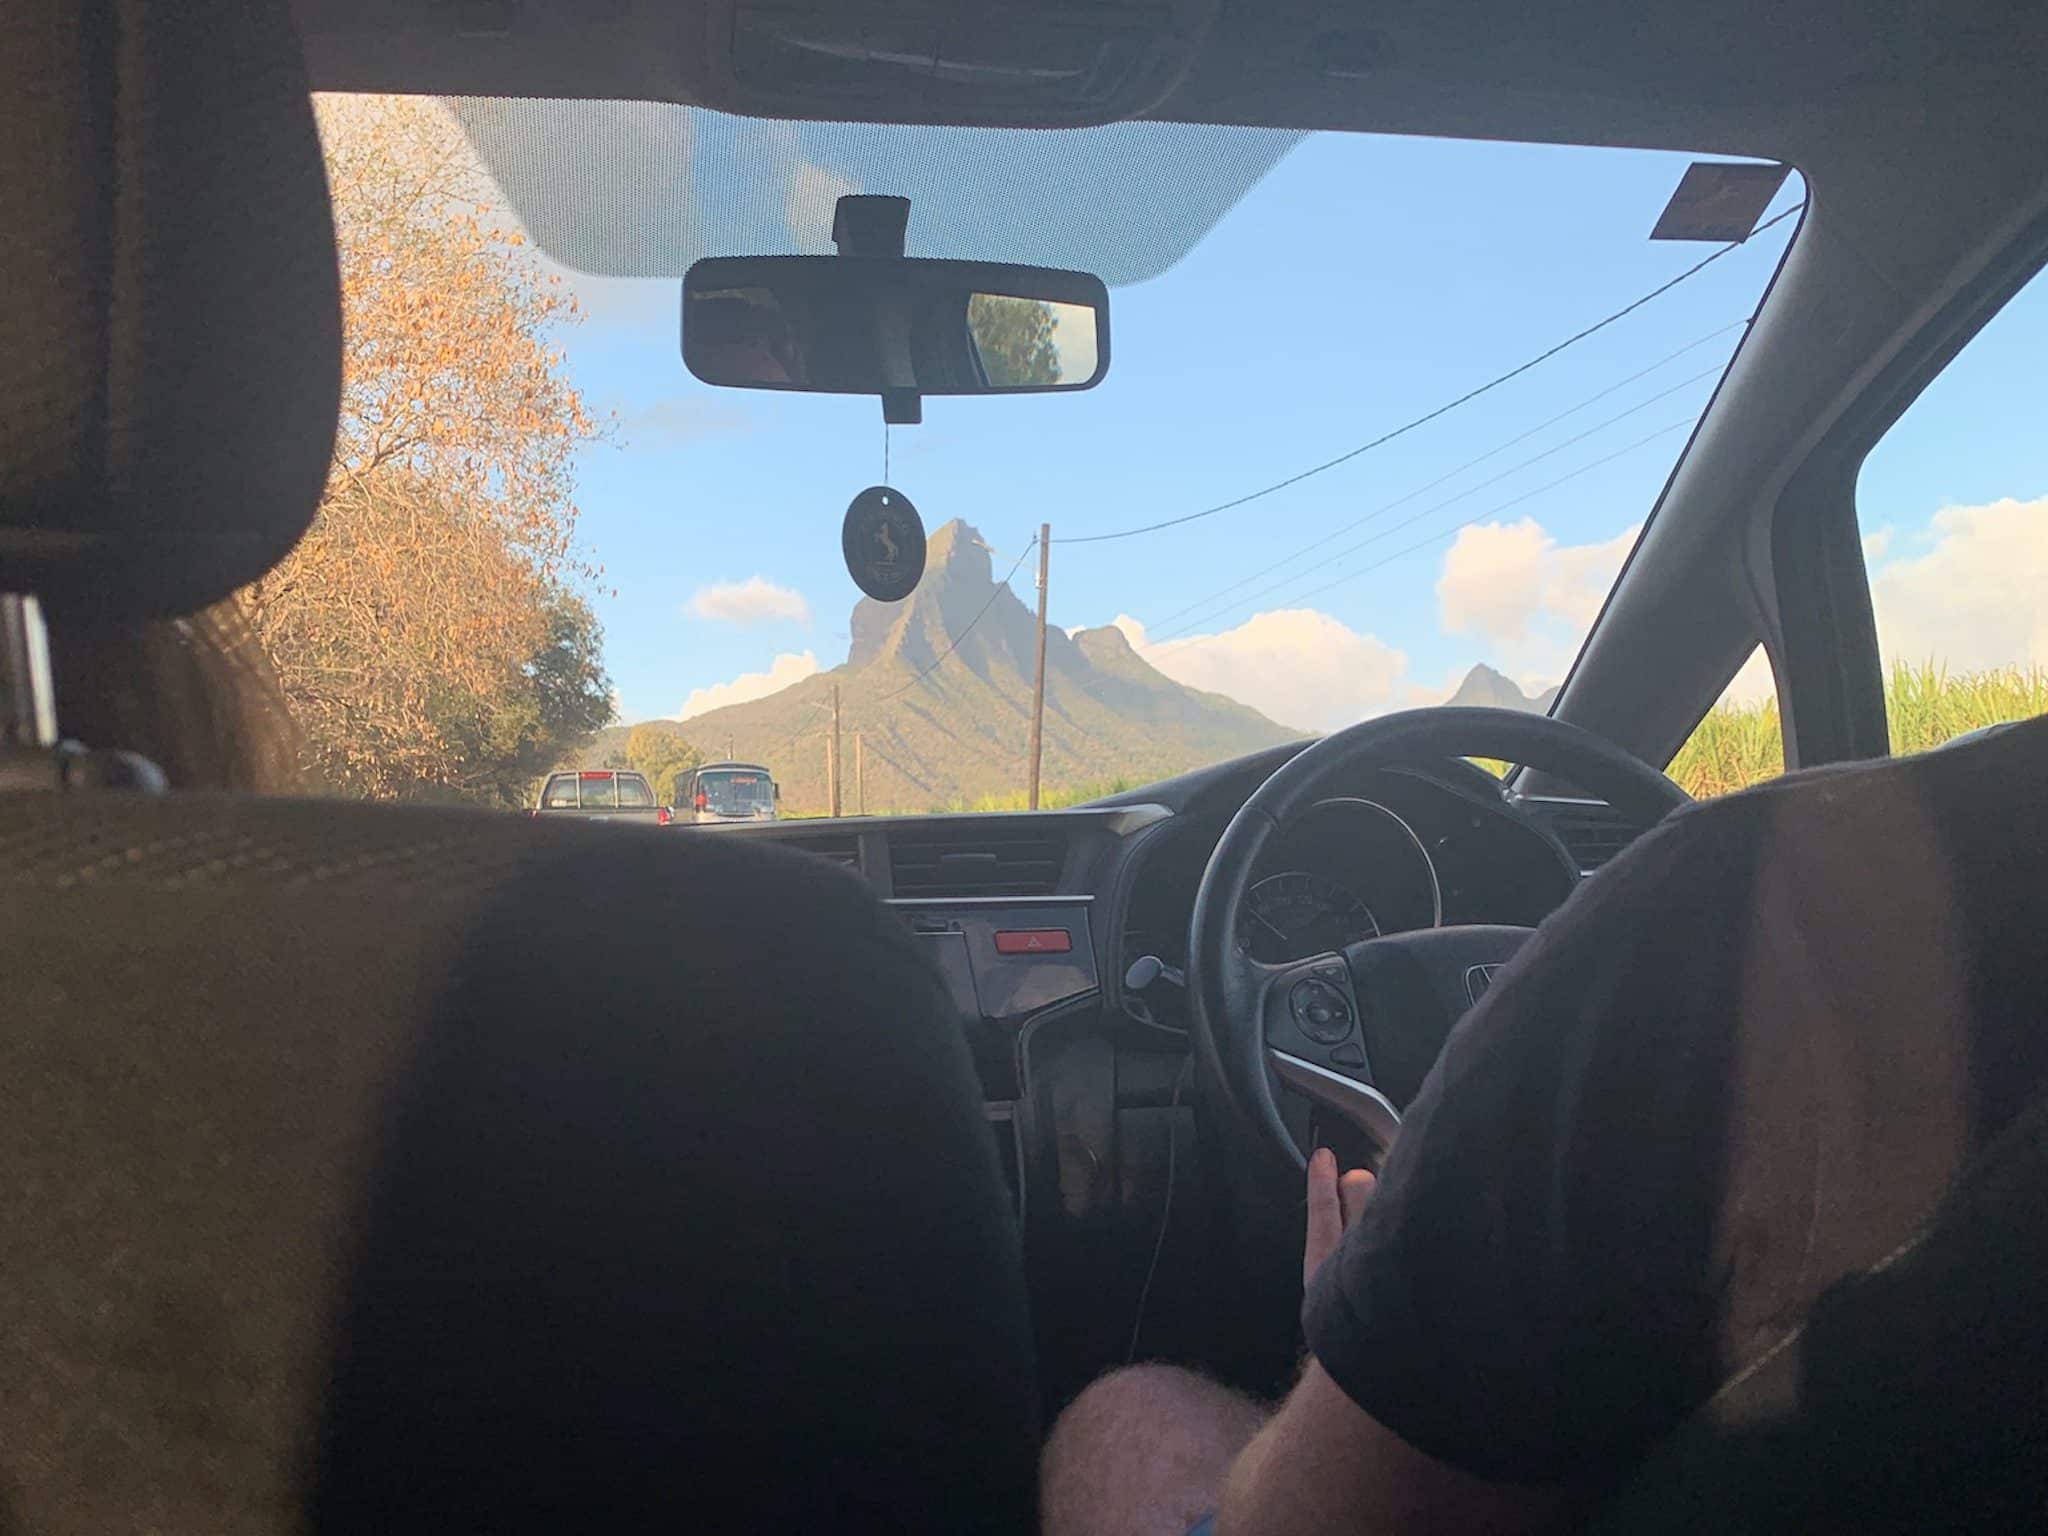 Mauritius Urlaub Tipps und Erfahrungen Mietwagen Auf Mauritius ist Linksverkehr – der Fahrer sitzt im Auto rechts. Da gewöhnt man sich aber ganz schnell dran. Ich hatte richtig Spaß, die Insel mit dem Mietwagen zu entdecken.